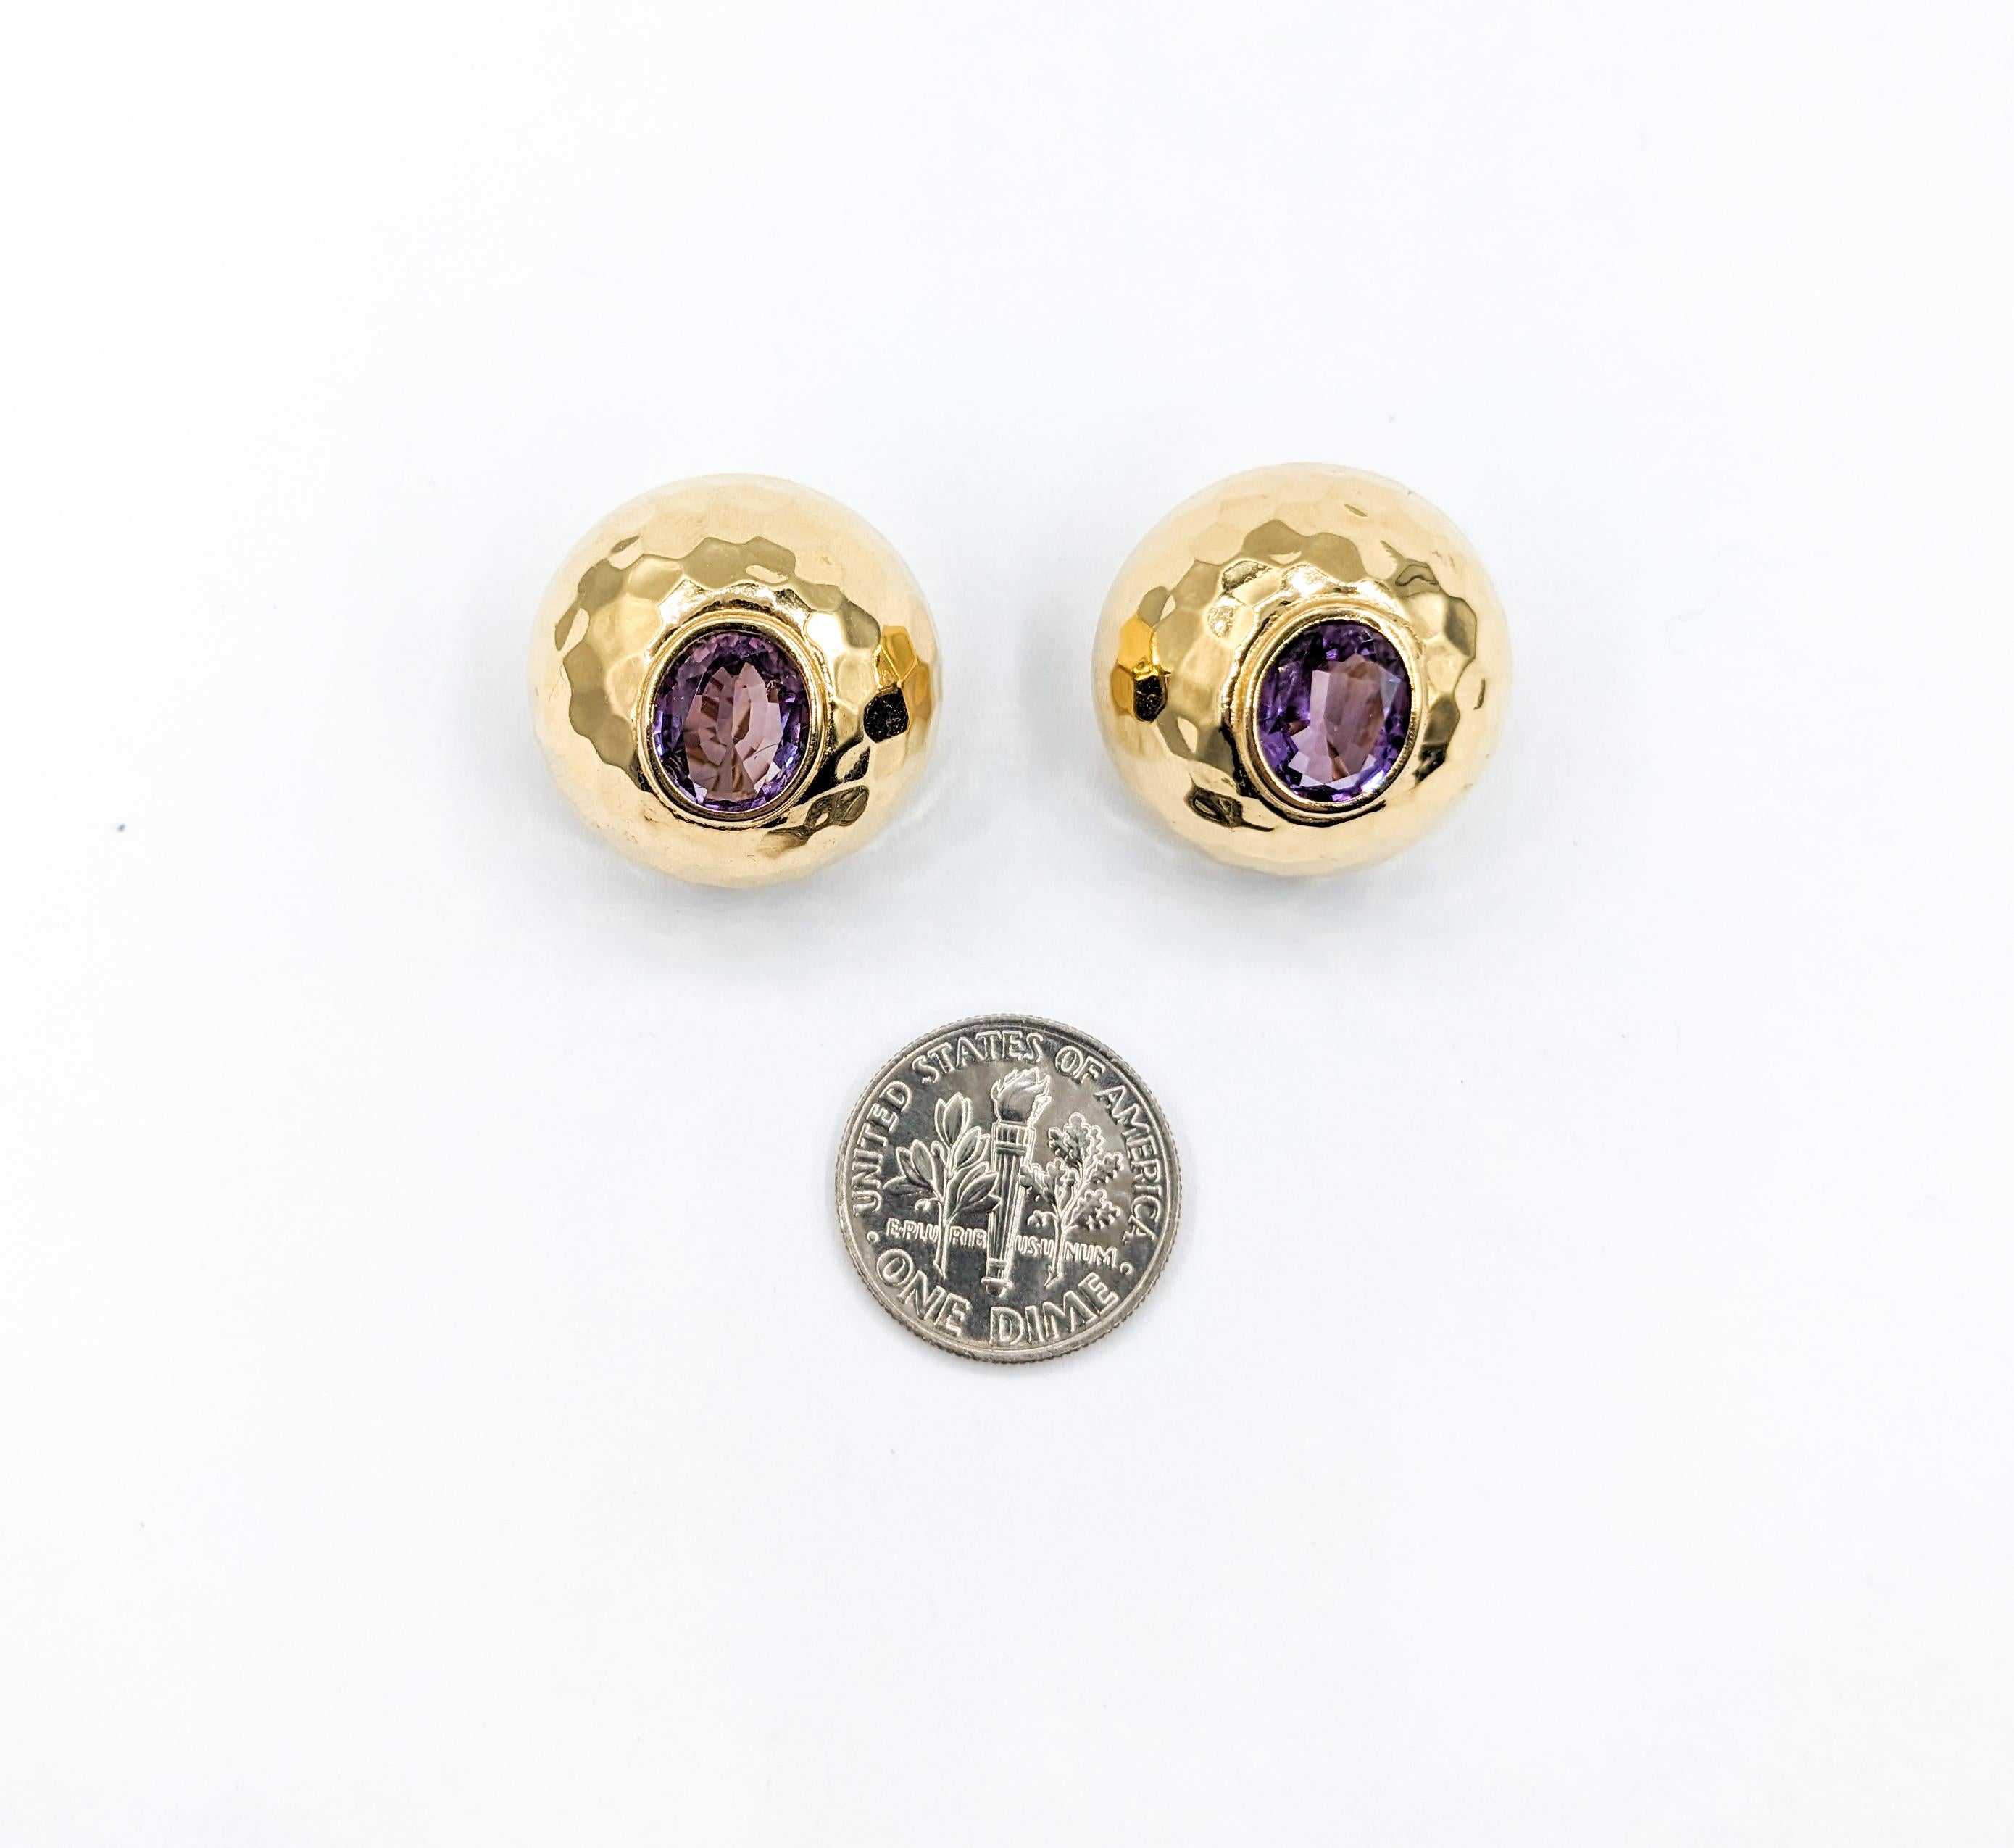 Vintage Amethyst gehämmert Clip auf Ohrringe in 14K Gold

Erhöhen Sie Ihren Vintage-Stil mit diesen exquisiten Ohrsteckern, die meisterhaft aus strahlendem 14-karätigem Gelbgold gefertigt sind. Diese Ohrringe zeichnen sich durch eine schöne